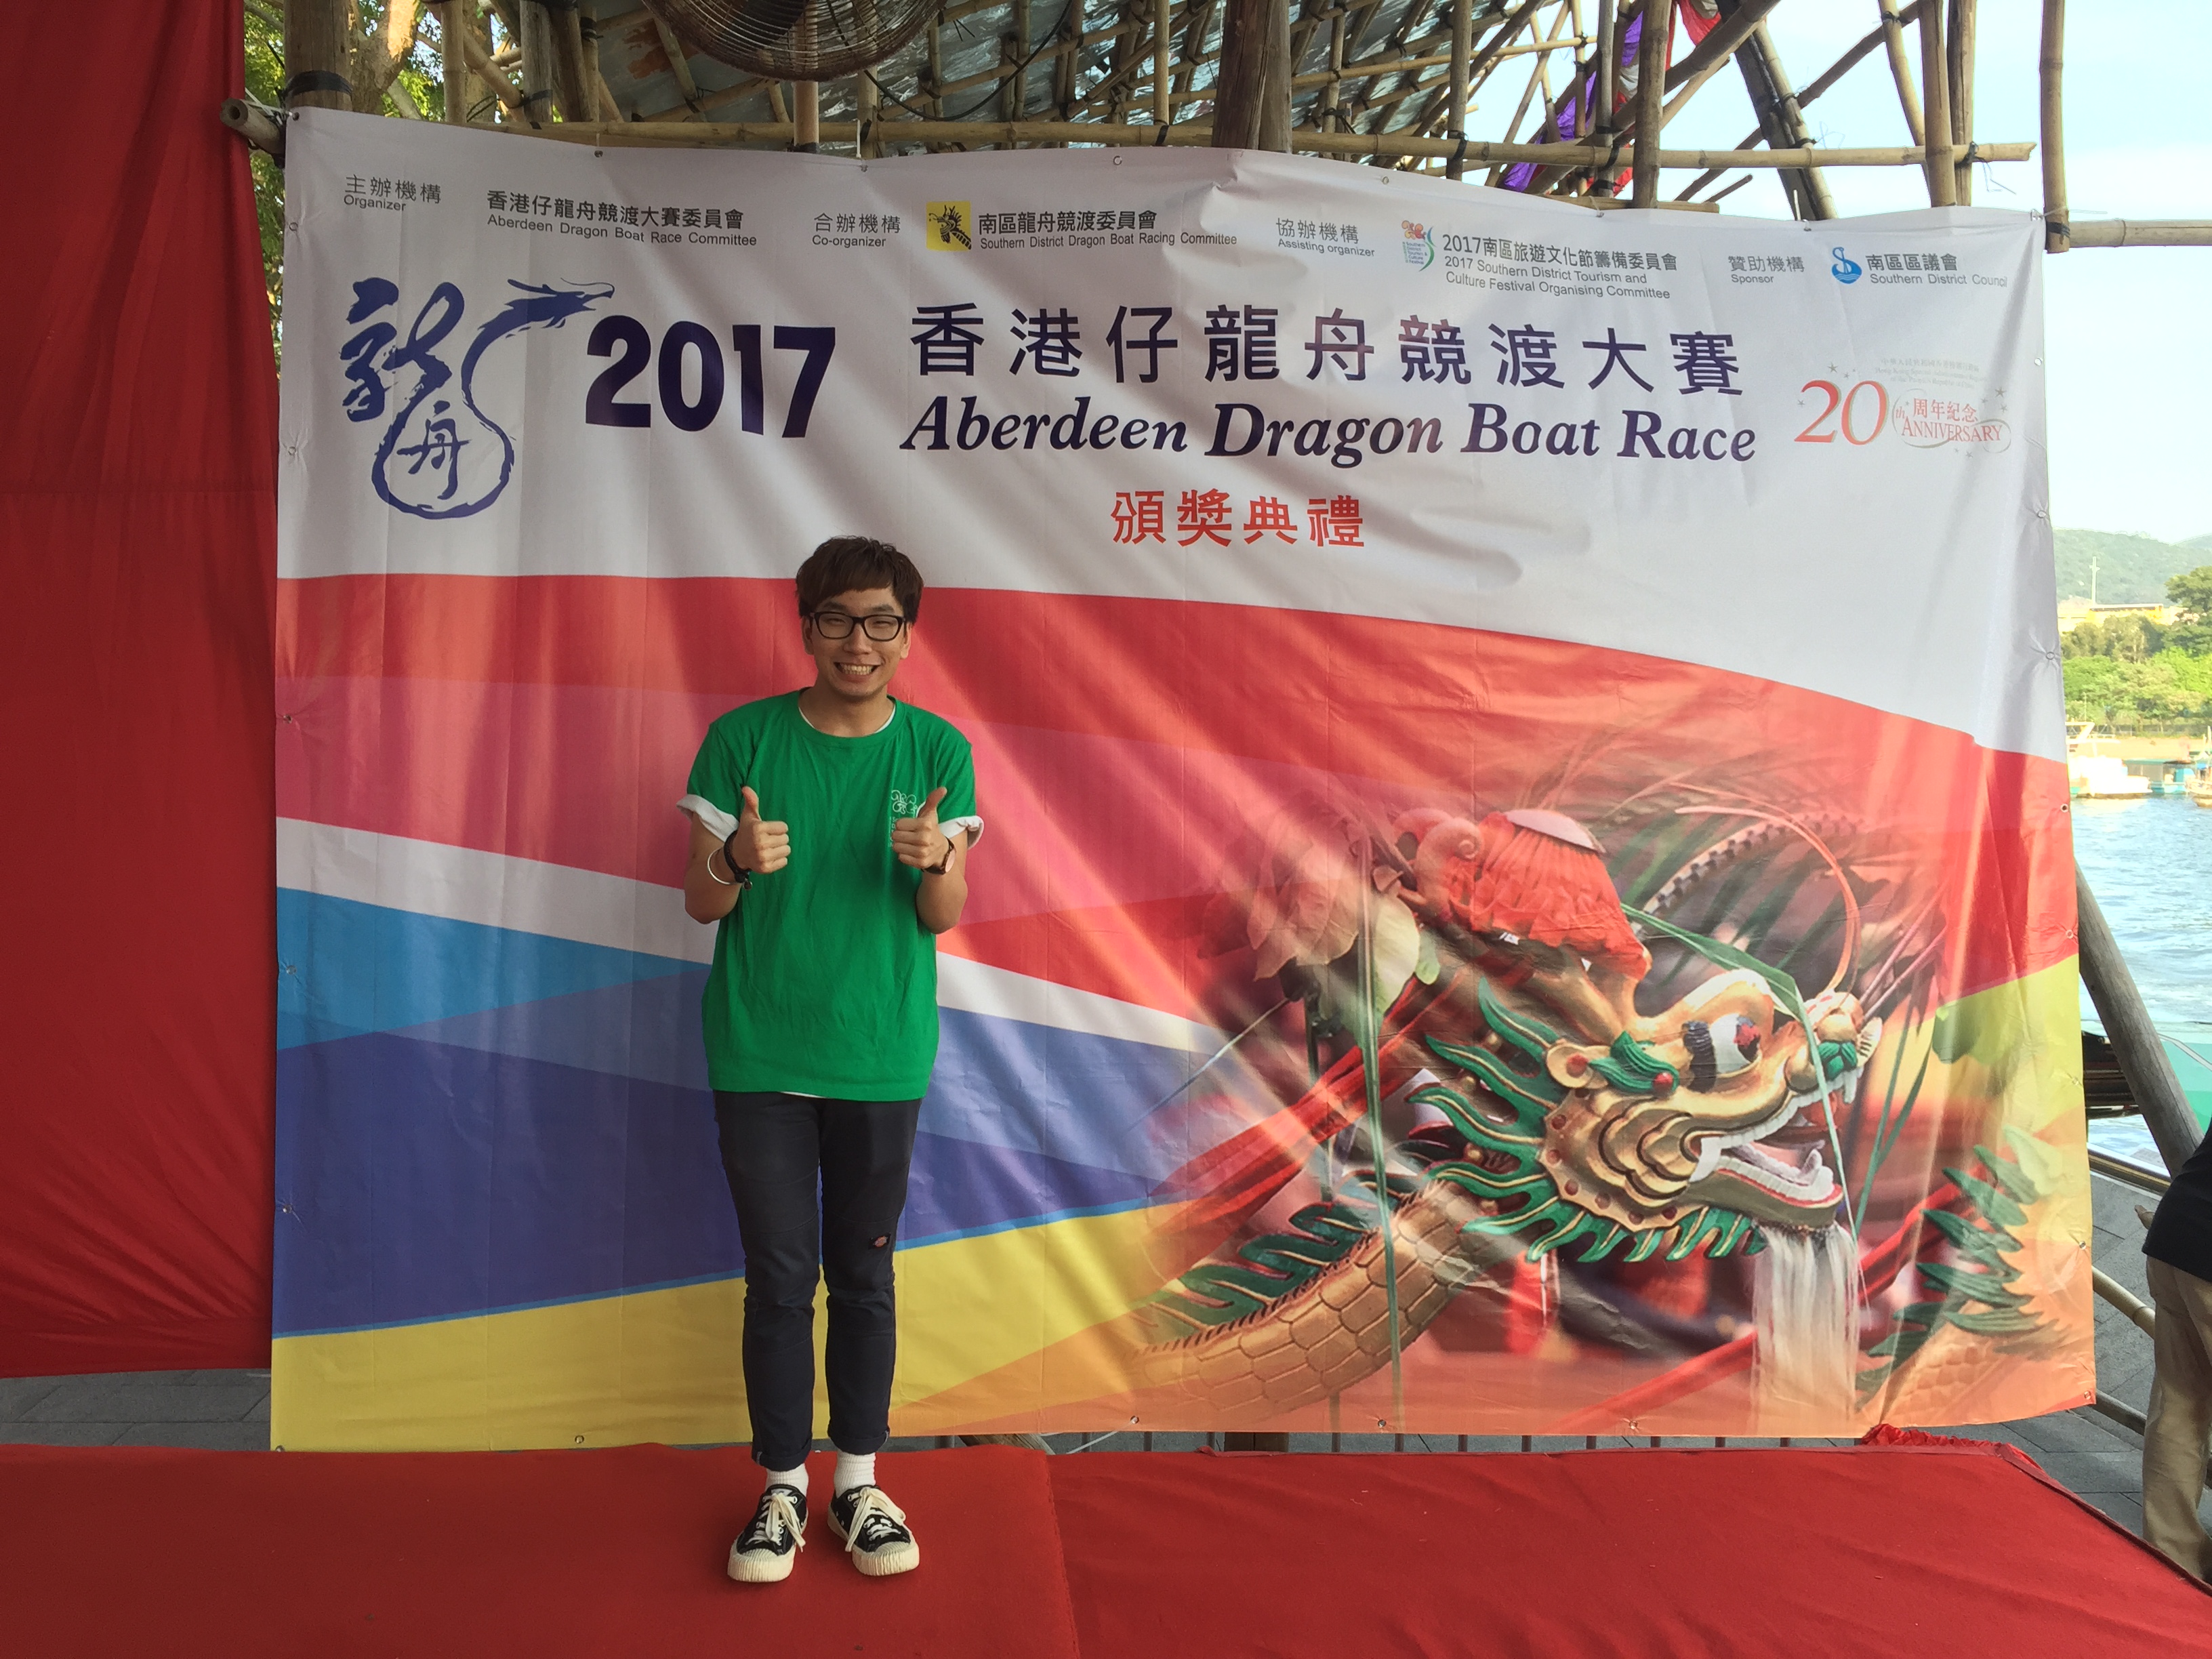 細眼之司儀主持紀錄: 「活動主持」2017香港仔龍舟競渡大賽